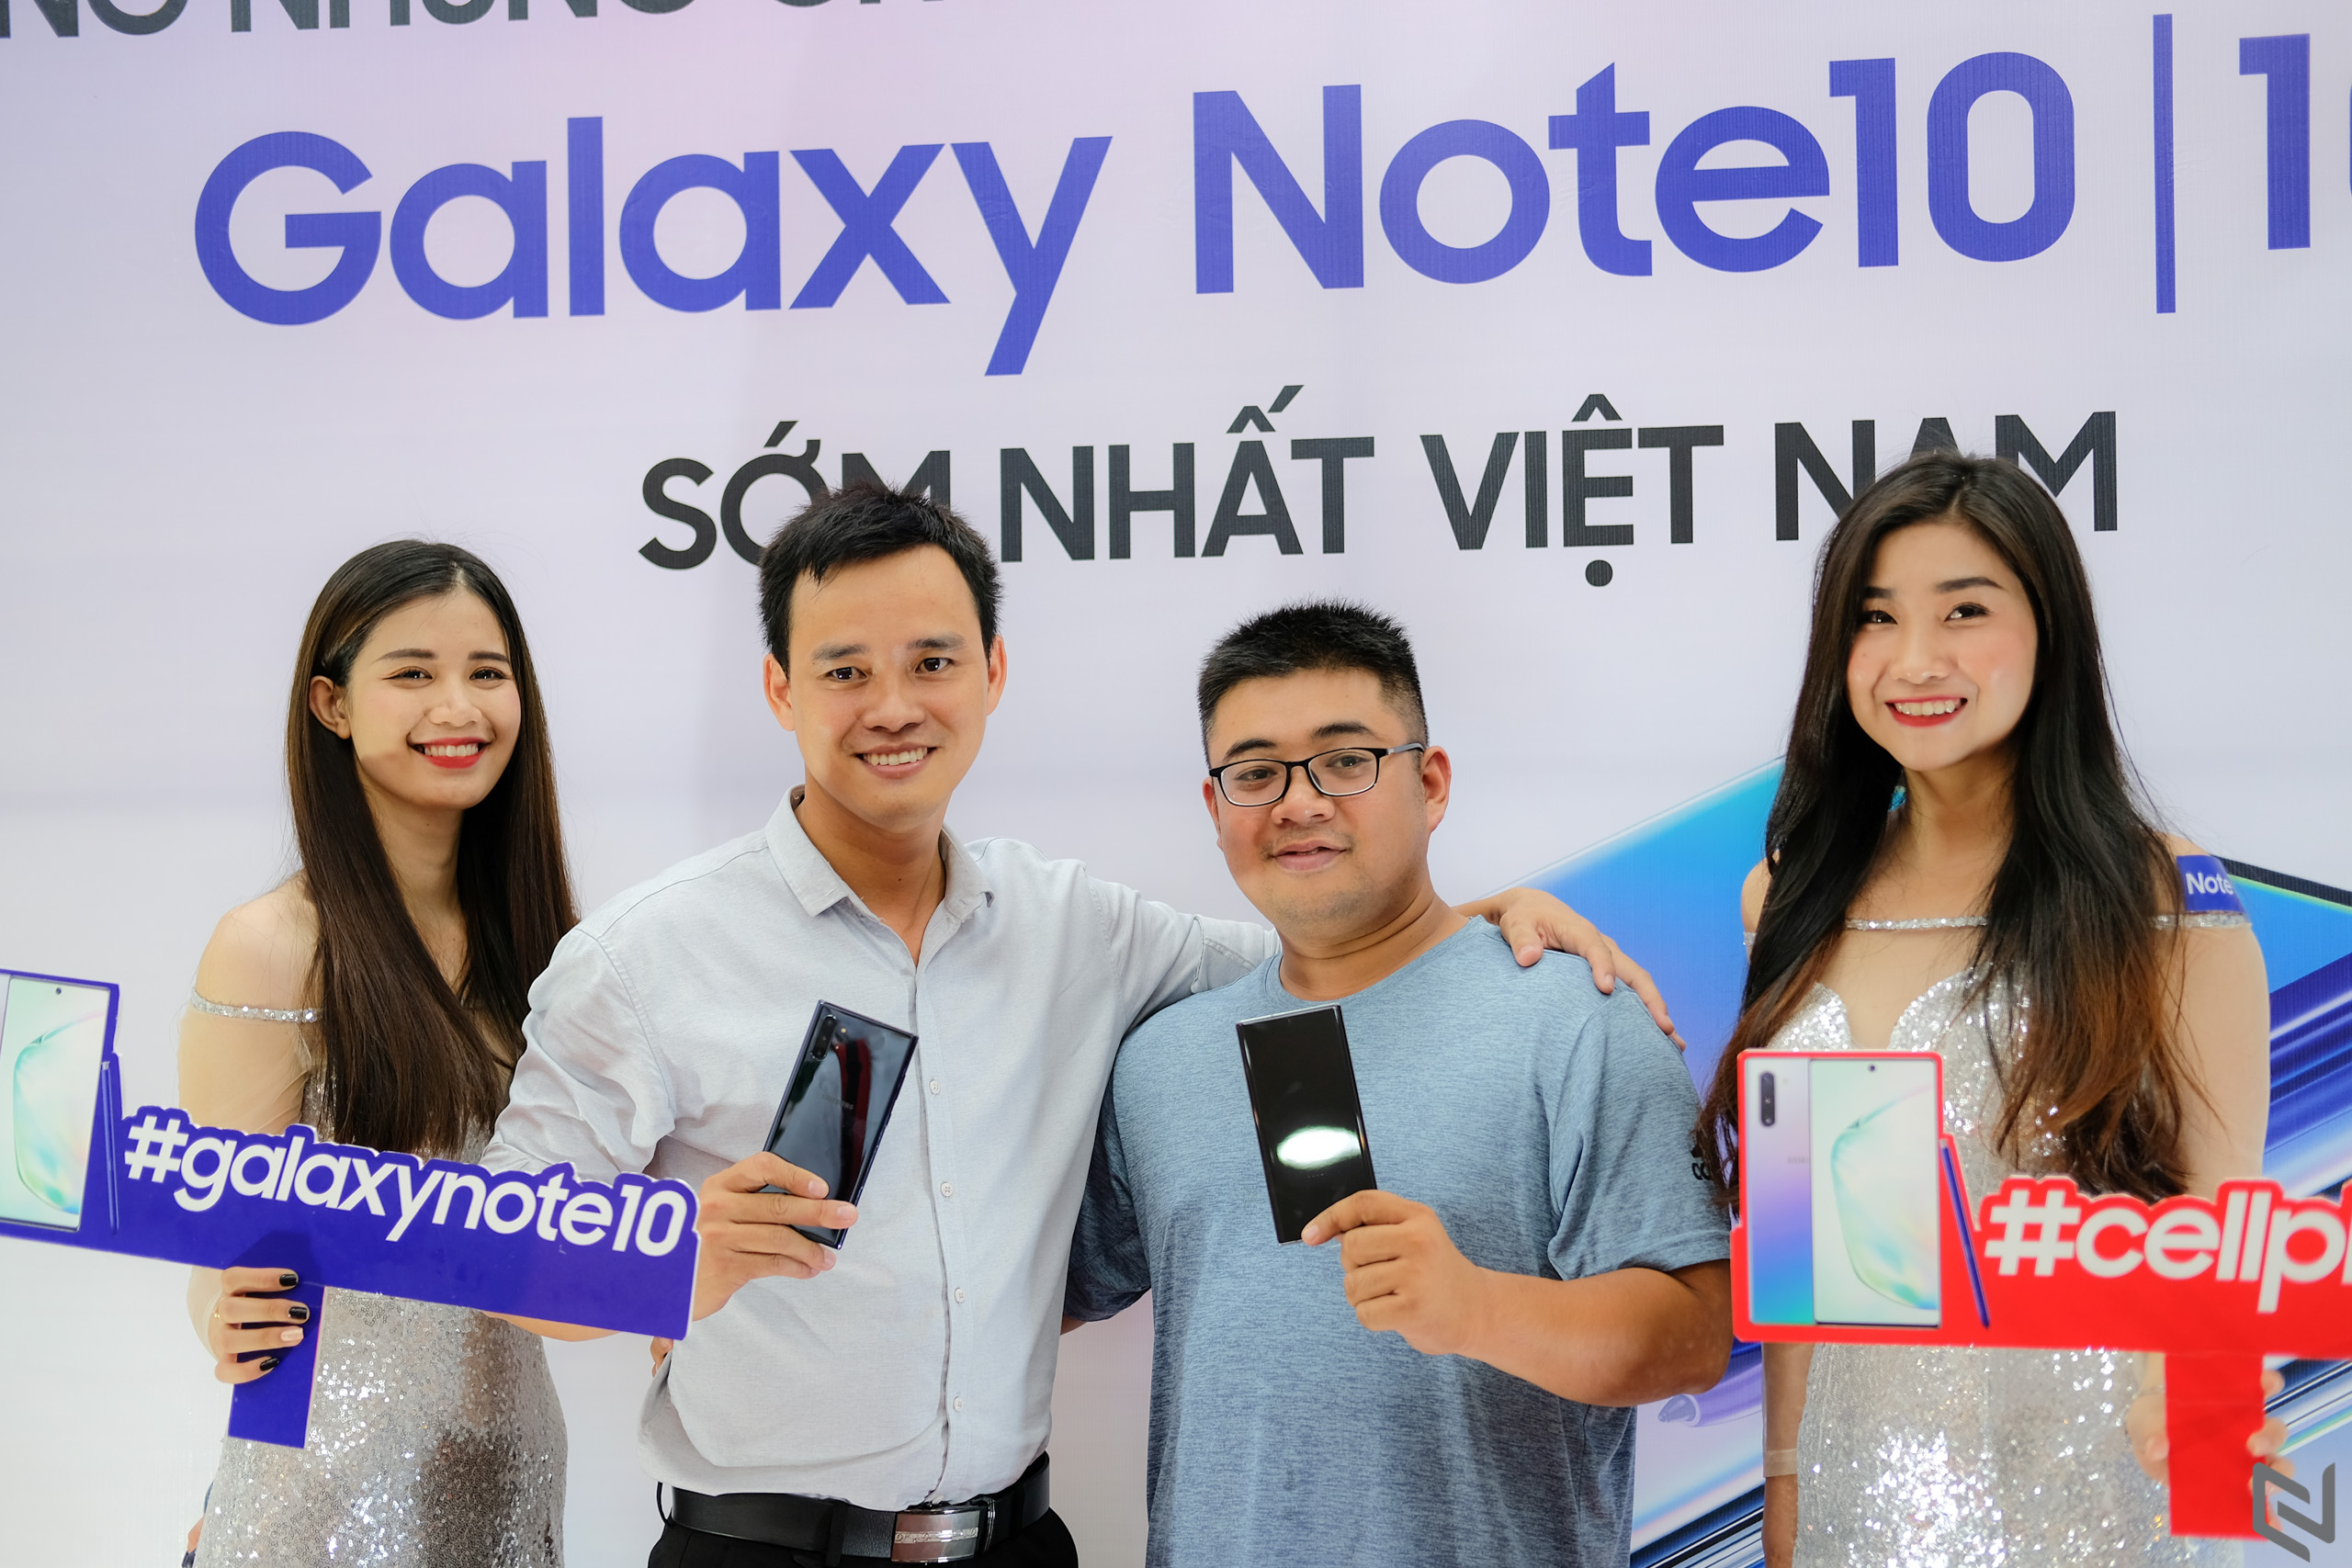 Galaxy Note 10|10+ mở bán, chờ đợi từ nửa đêm để mở hộp tại CellphoneS